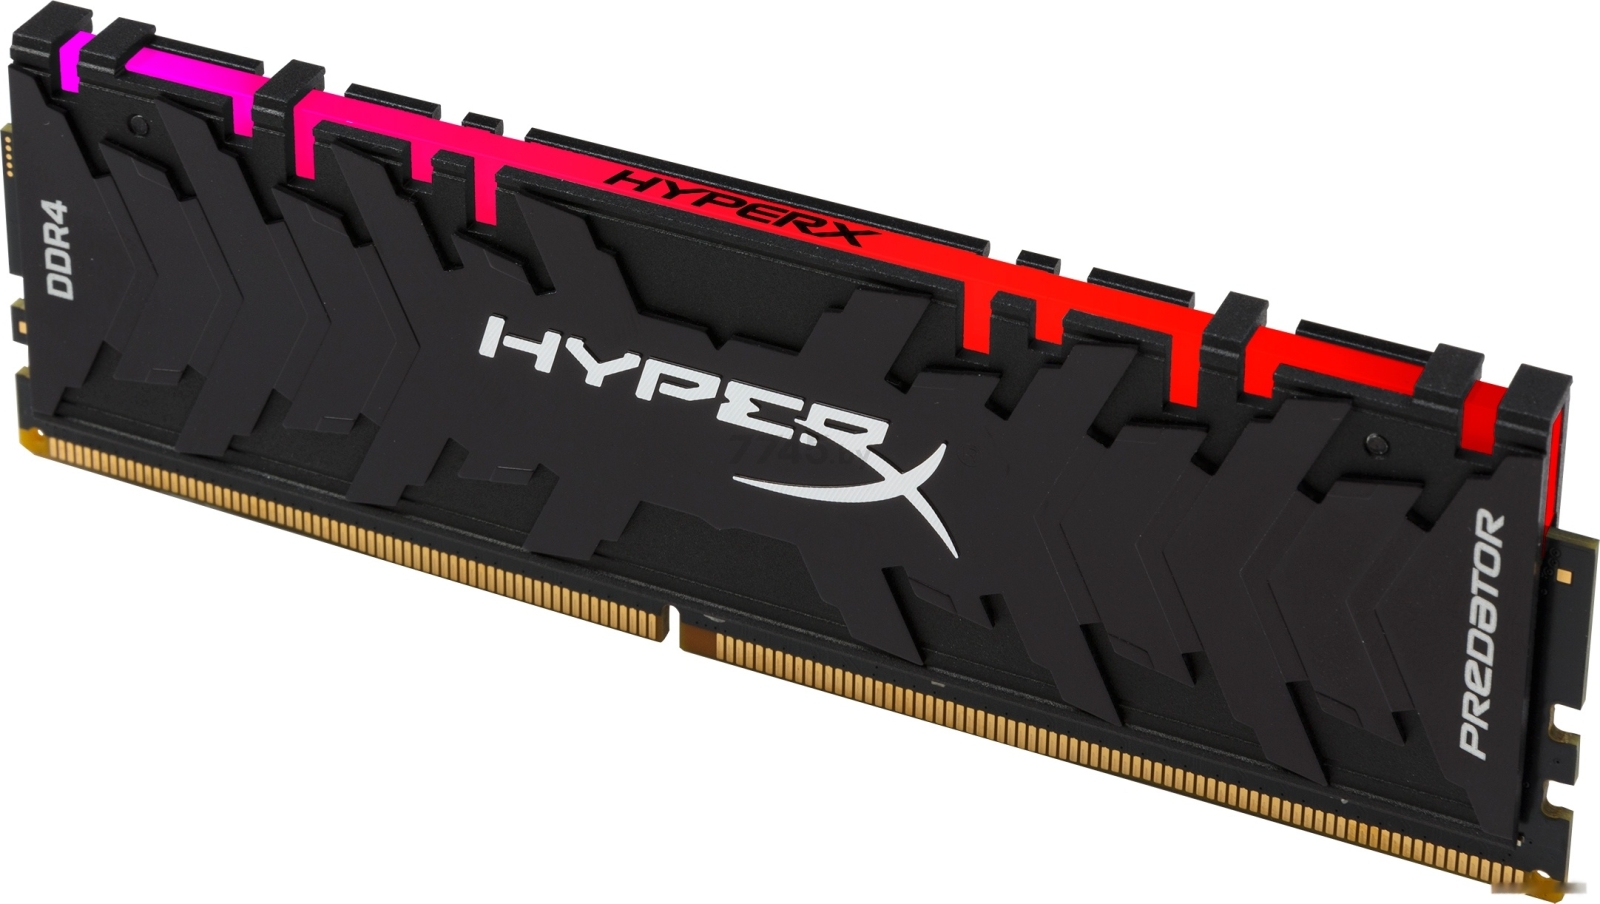 Оперативная память HYPERX Predator RGB 8GB DDR4 PC4-24000 (HX430C15PB3A/8) - Фото 2